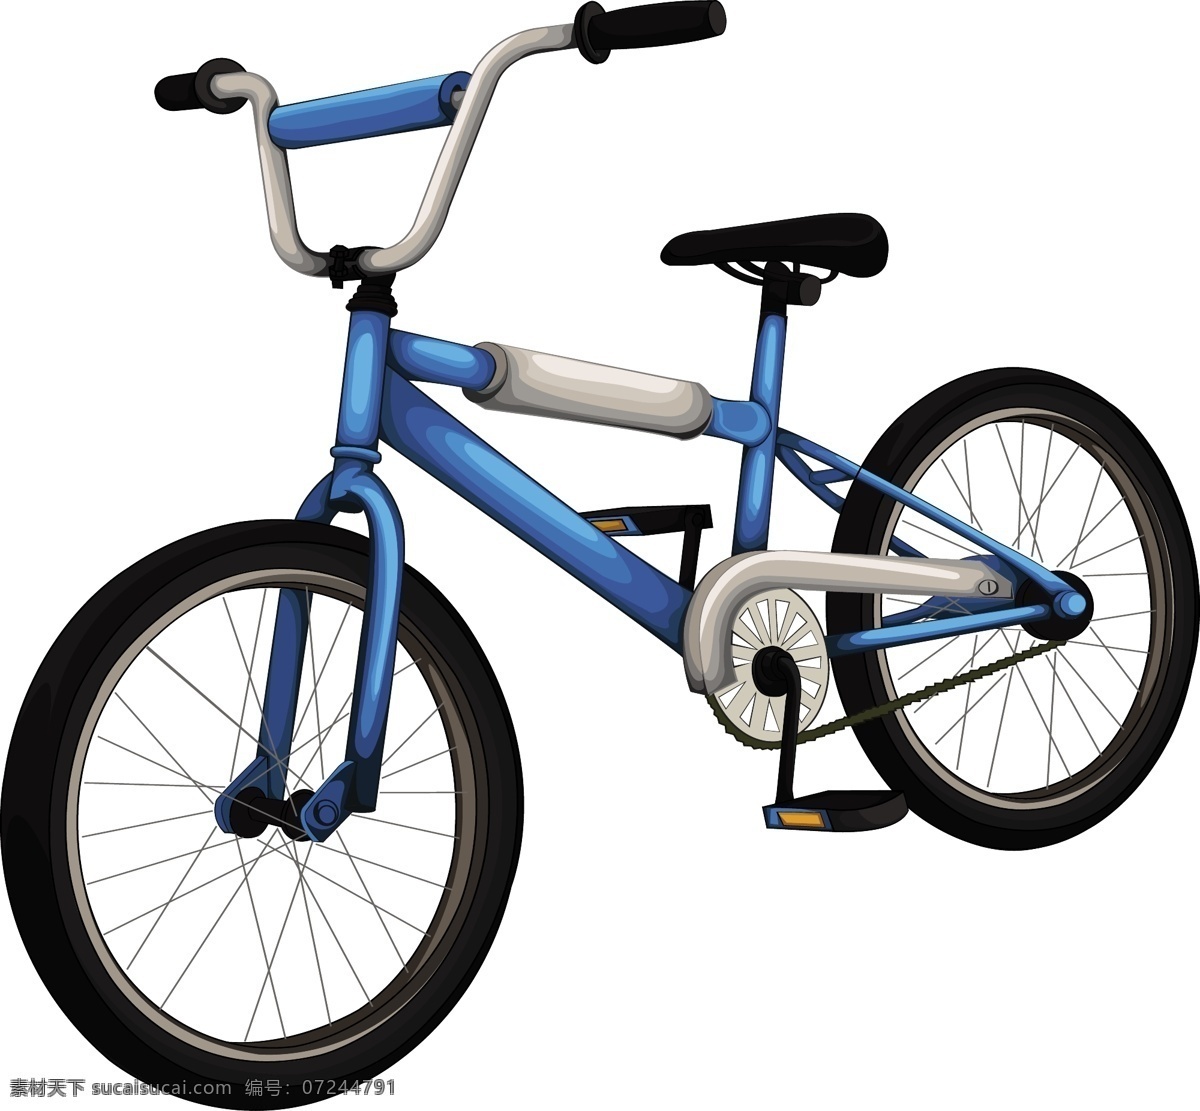 卡通 自行车 卡通自行车 小轮自行车 汽车图片 现代科技